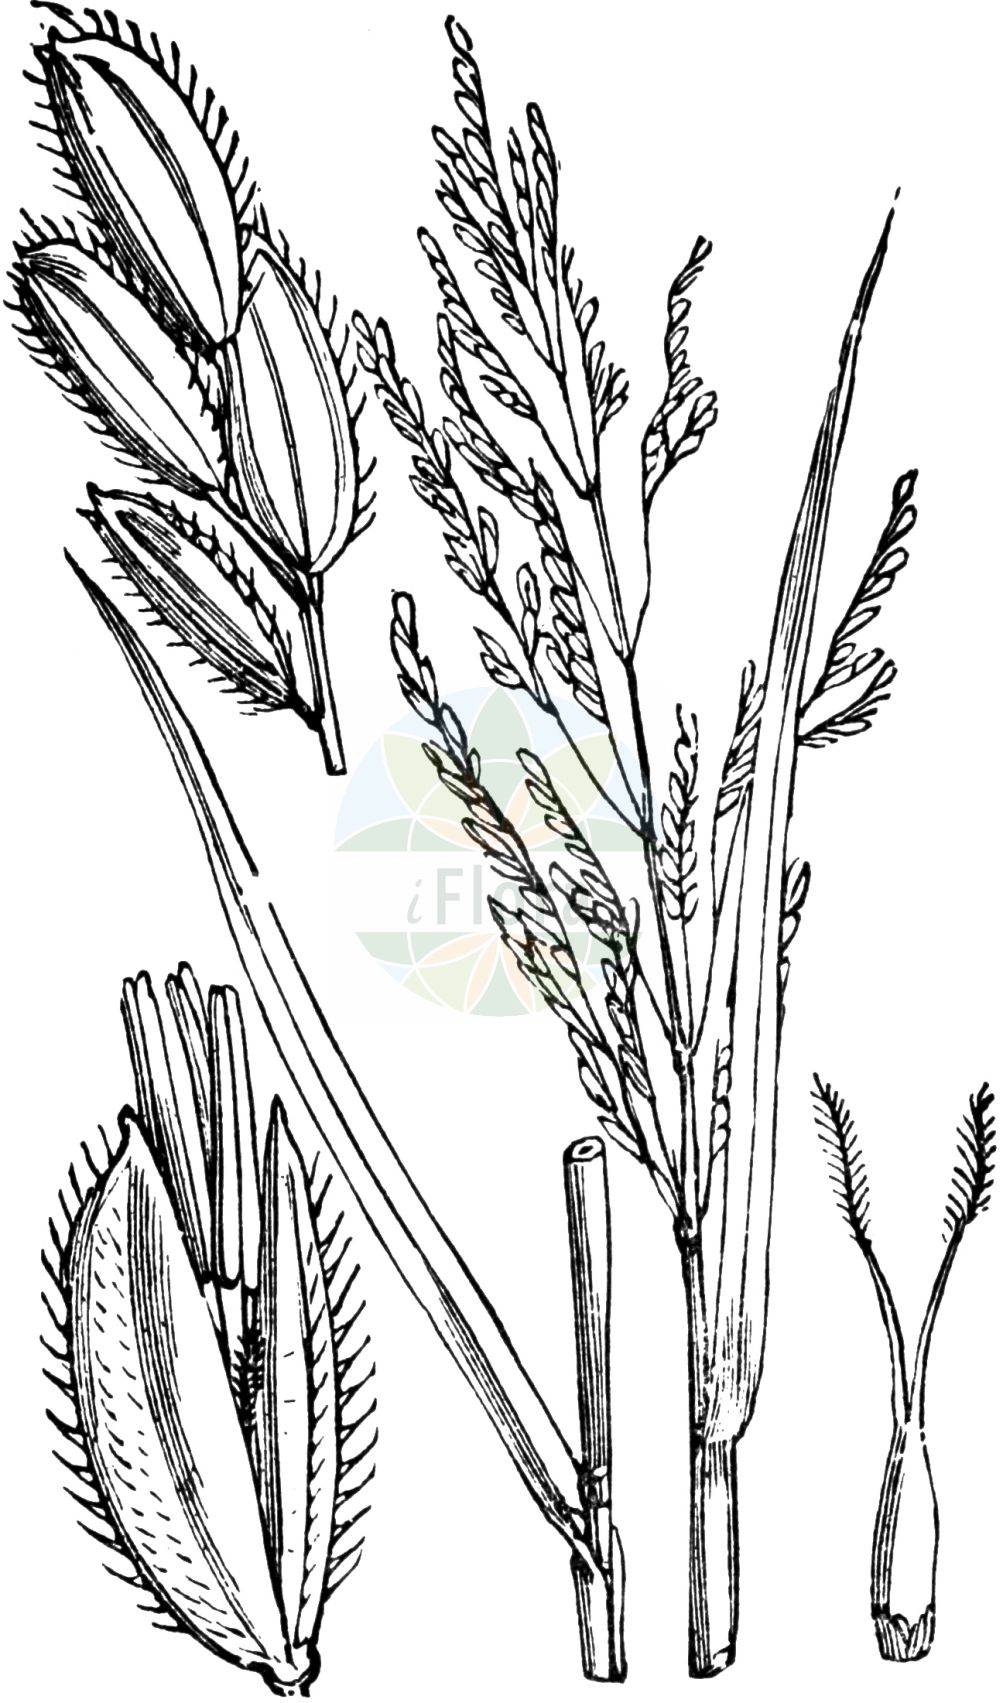 Historische Abbildung von Leersia oryzoides (Europäische Reisquecke - Cut-grass). Das Bild zeigt Blatt, Bluete, Frucht und Same. ---- Historical Drawing of Leersia oryzoides (Europäische Reisquecke - Cut-grass). The image is showing leaf, flower, fruit and seed.(Leersia oryzoides,Europäische Reisquecke,Cut-grass,Homalocenchrus oryzoides,Leersia oryzoides,Oryza clandestina,Oryza oryzoides,Phalaris oryzoides,Europaeische Reisquecke,Reisquecke,Wilder Reis,Cut-grass,Rice Grass,Marsh-grass,Rice Cutgrass,Leersia,Reisquecke,Cutgrass,Poaceae,Süßgräser,Grass family,Blatt,Bluete,Frucht,Same,leaf,flower,fruit,seed,Fitch et al. (1880))